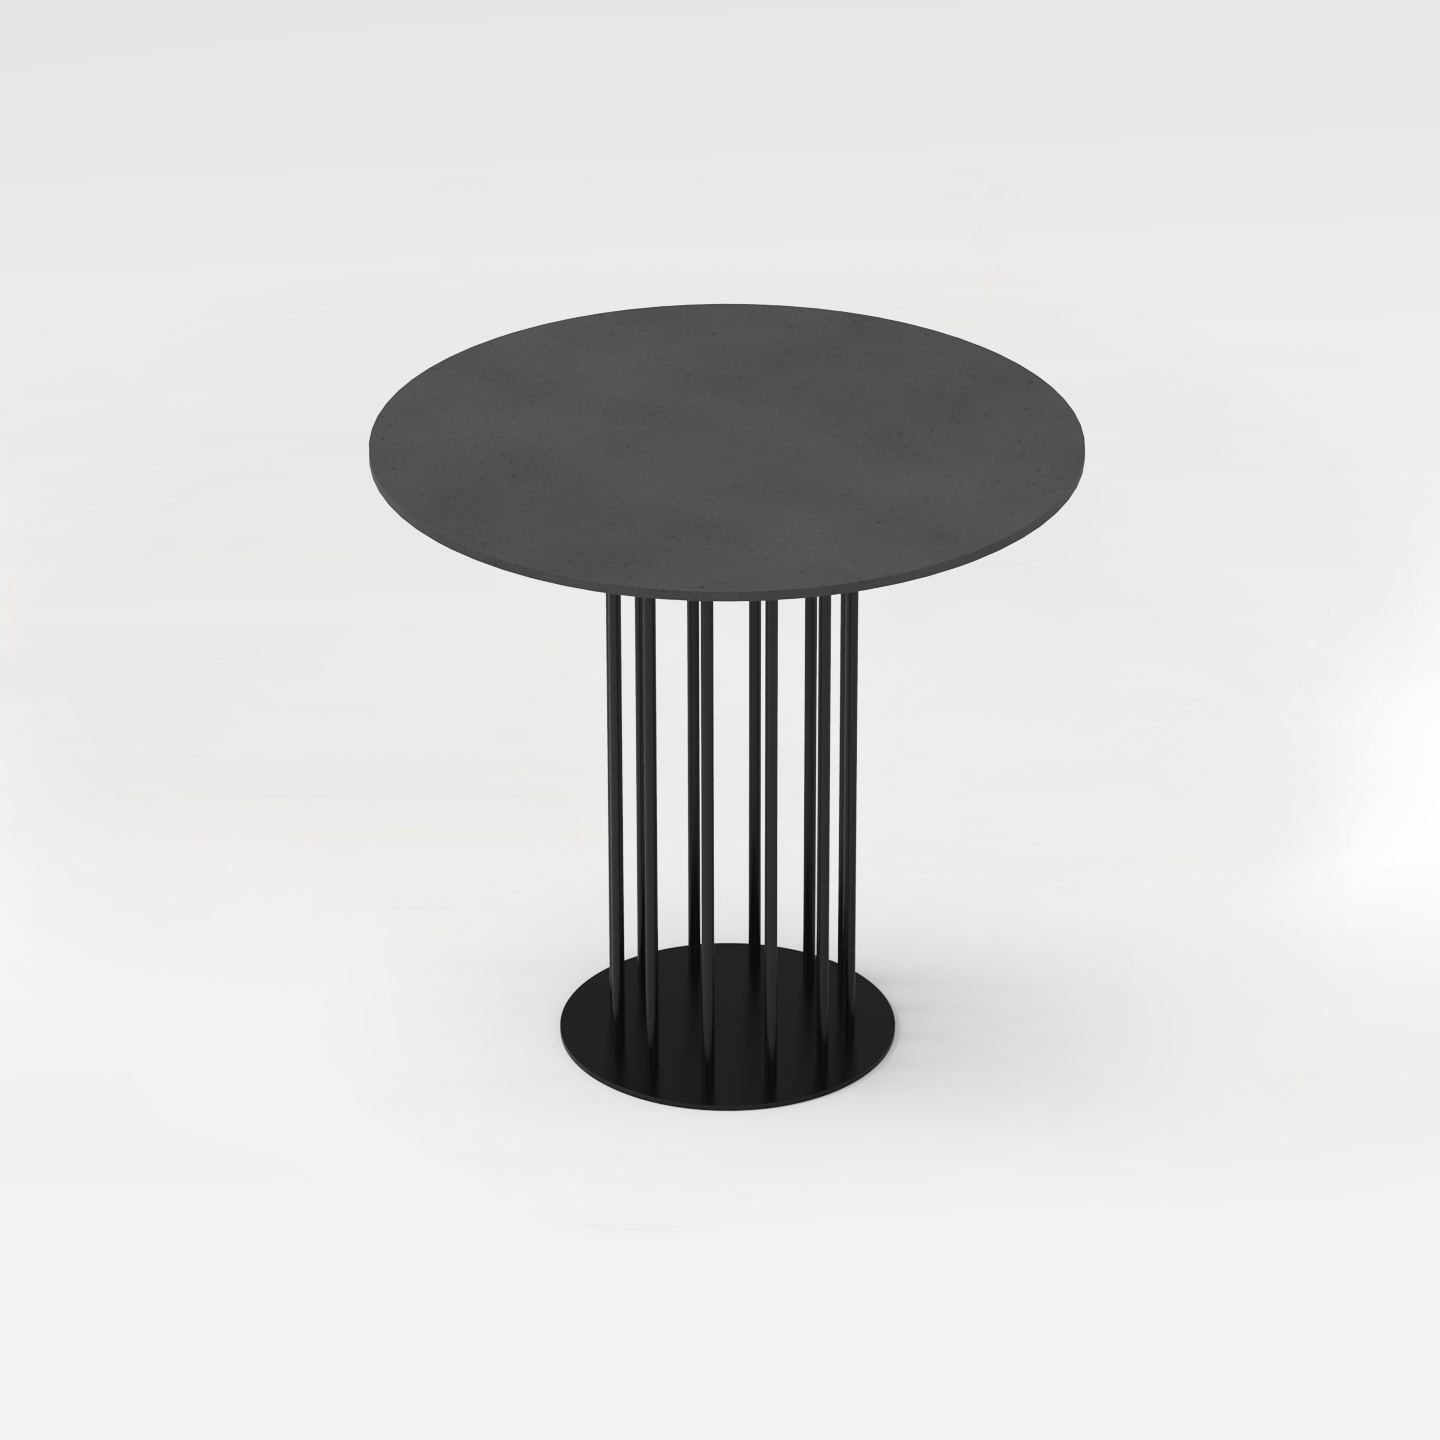 CO33 eleganter Stehtisch Bistrotisch rund 120 cm aus schwarzem Beton mit Tischgestell schwarz